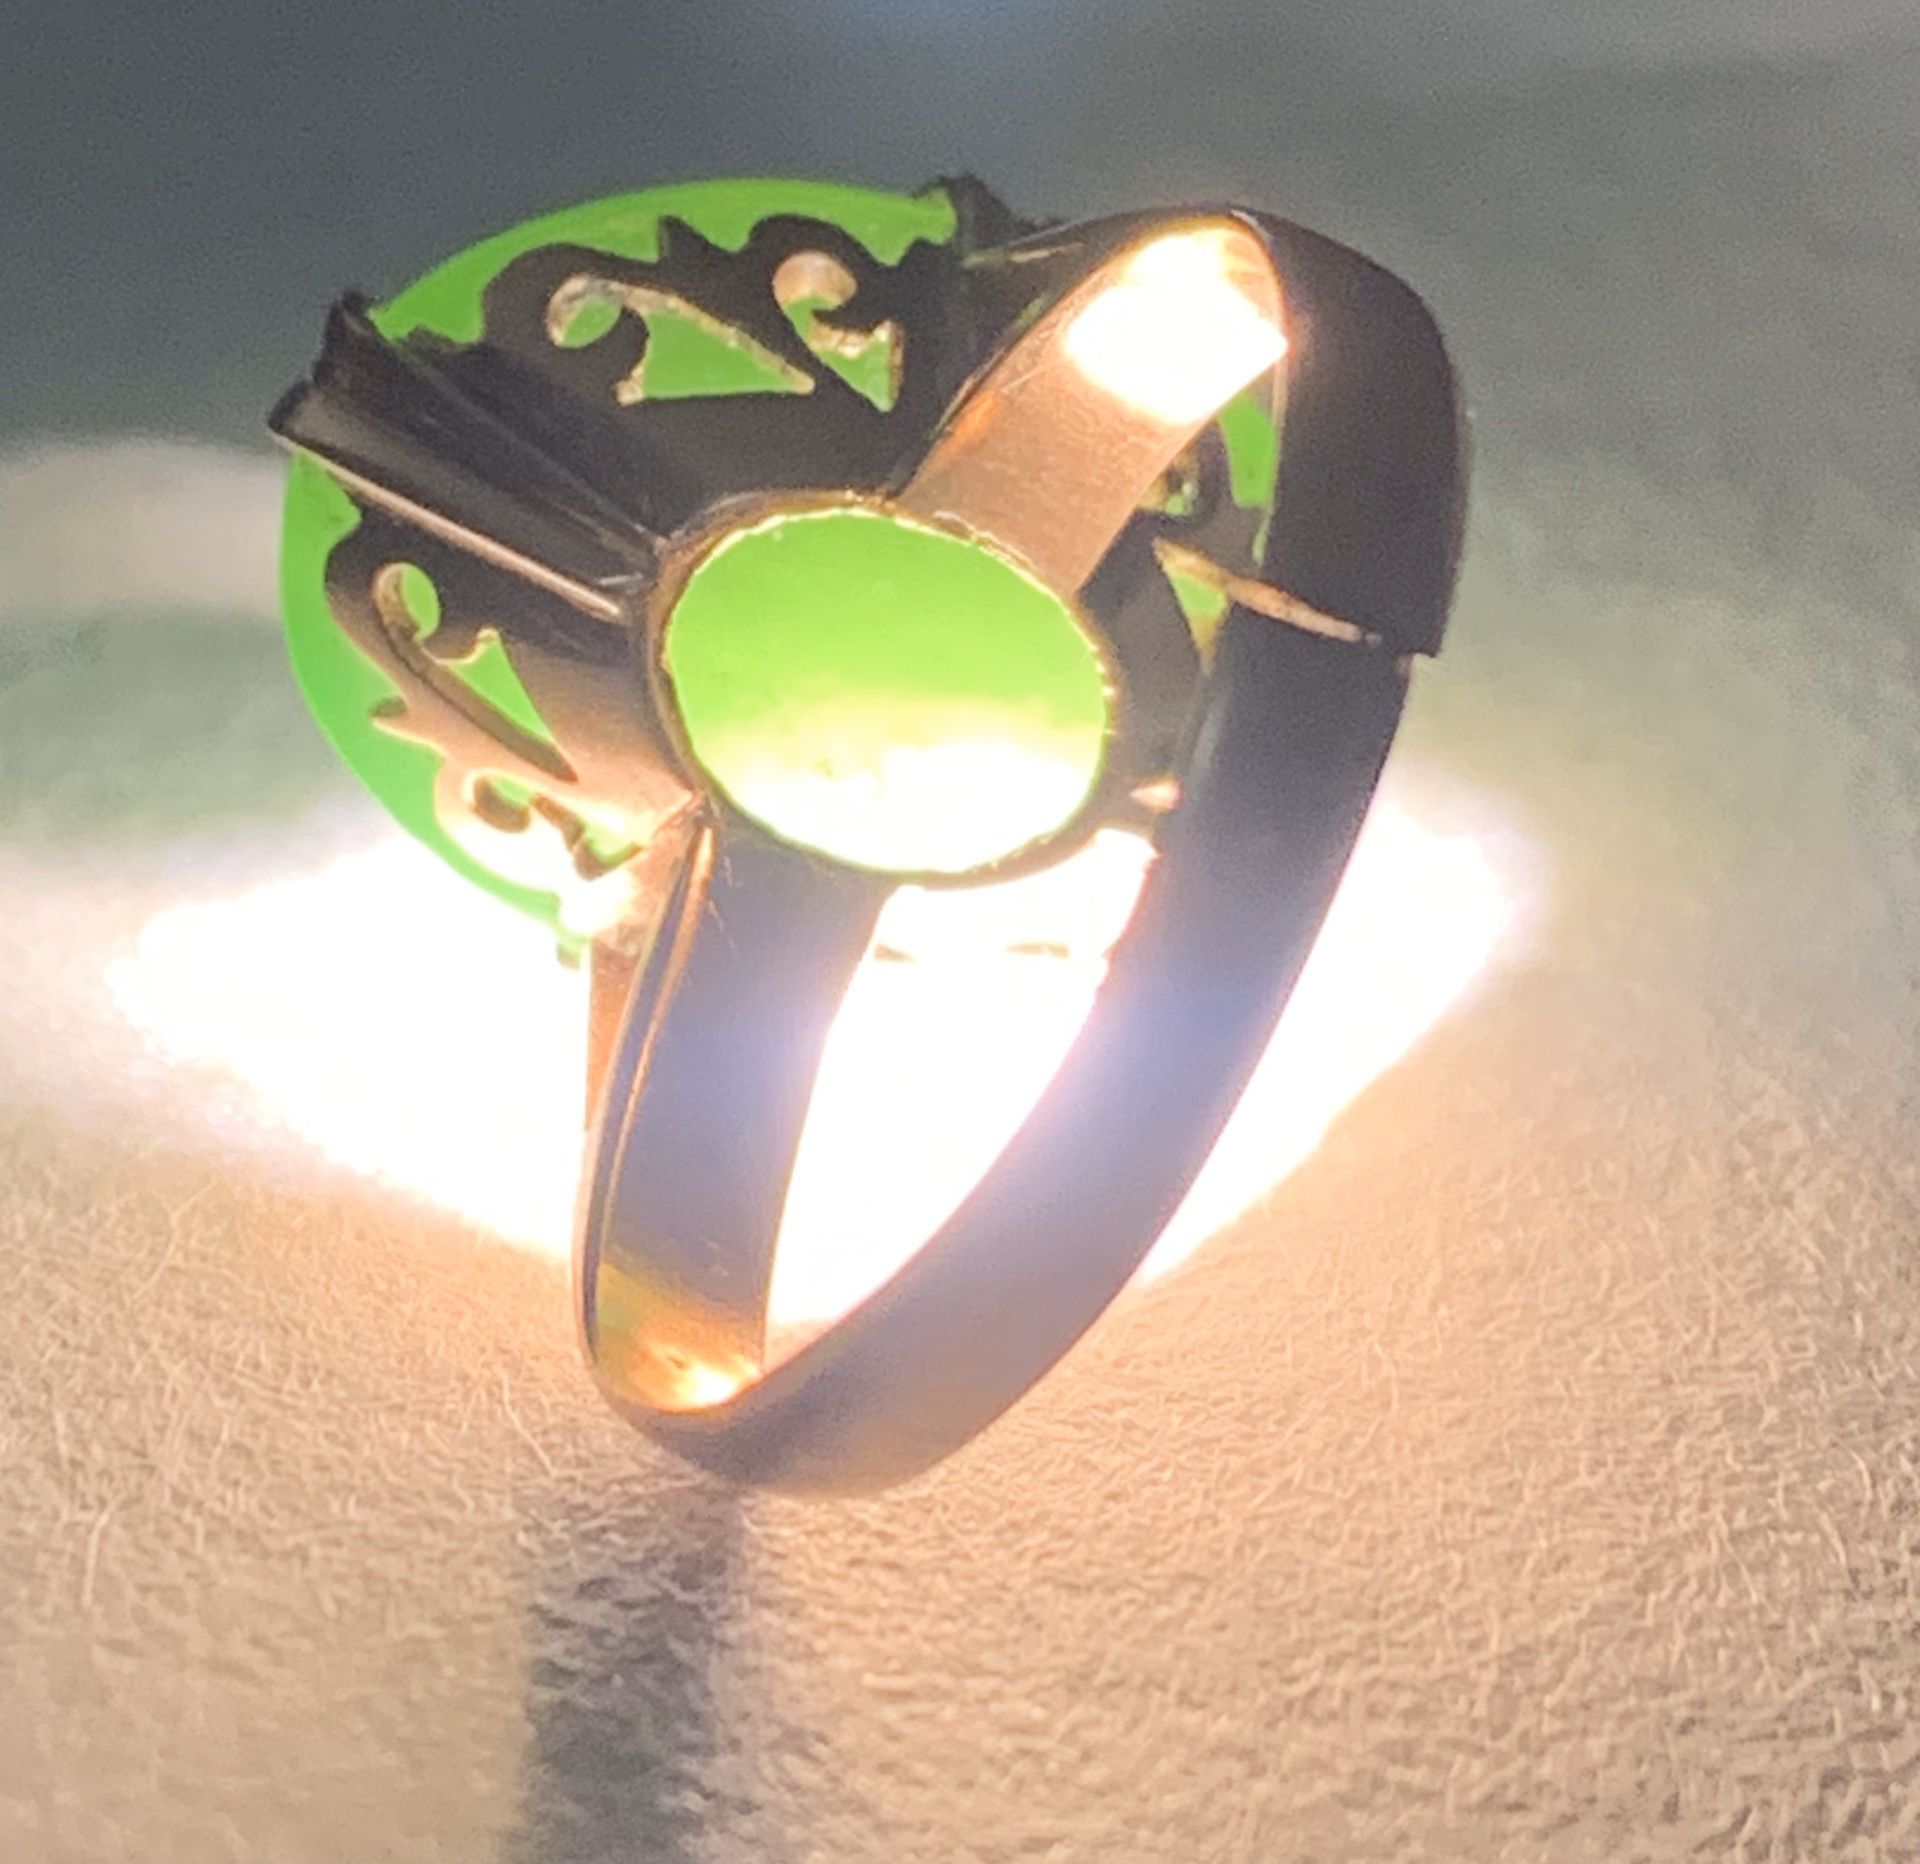 Antique Nephrite Jade Ring (for Repair) 14k LAST CHANCE PRICE